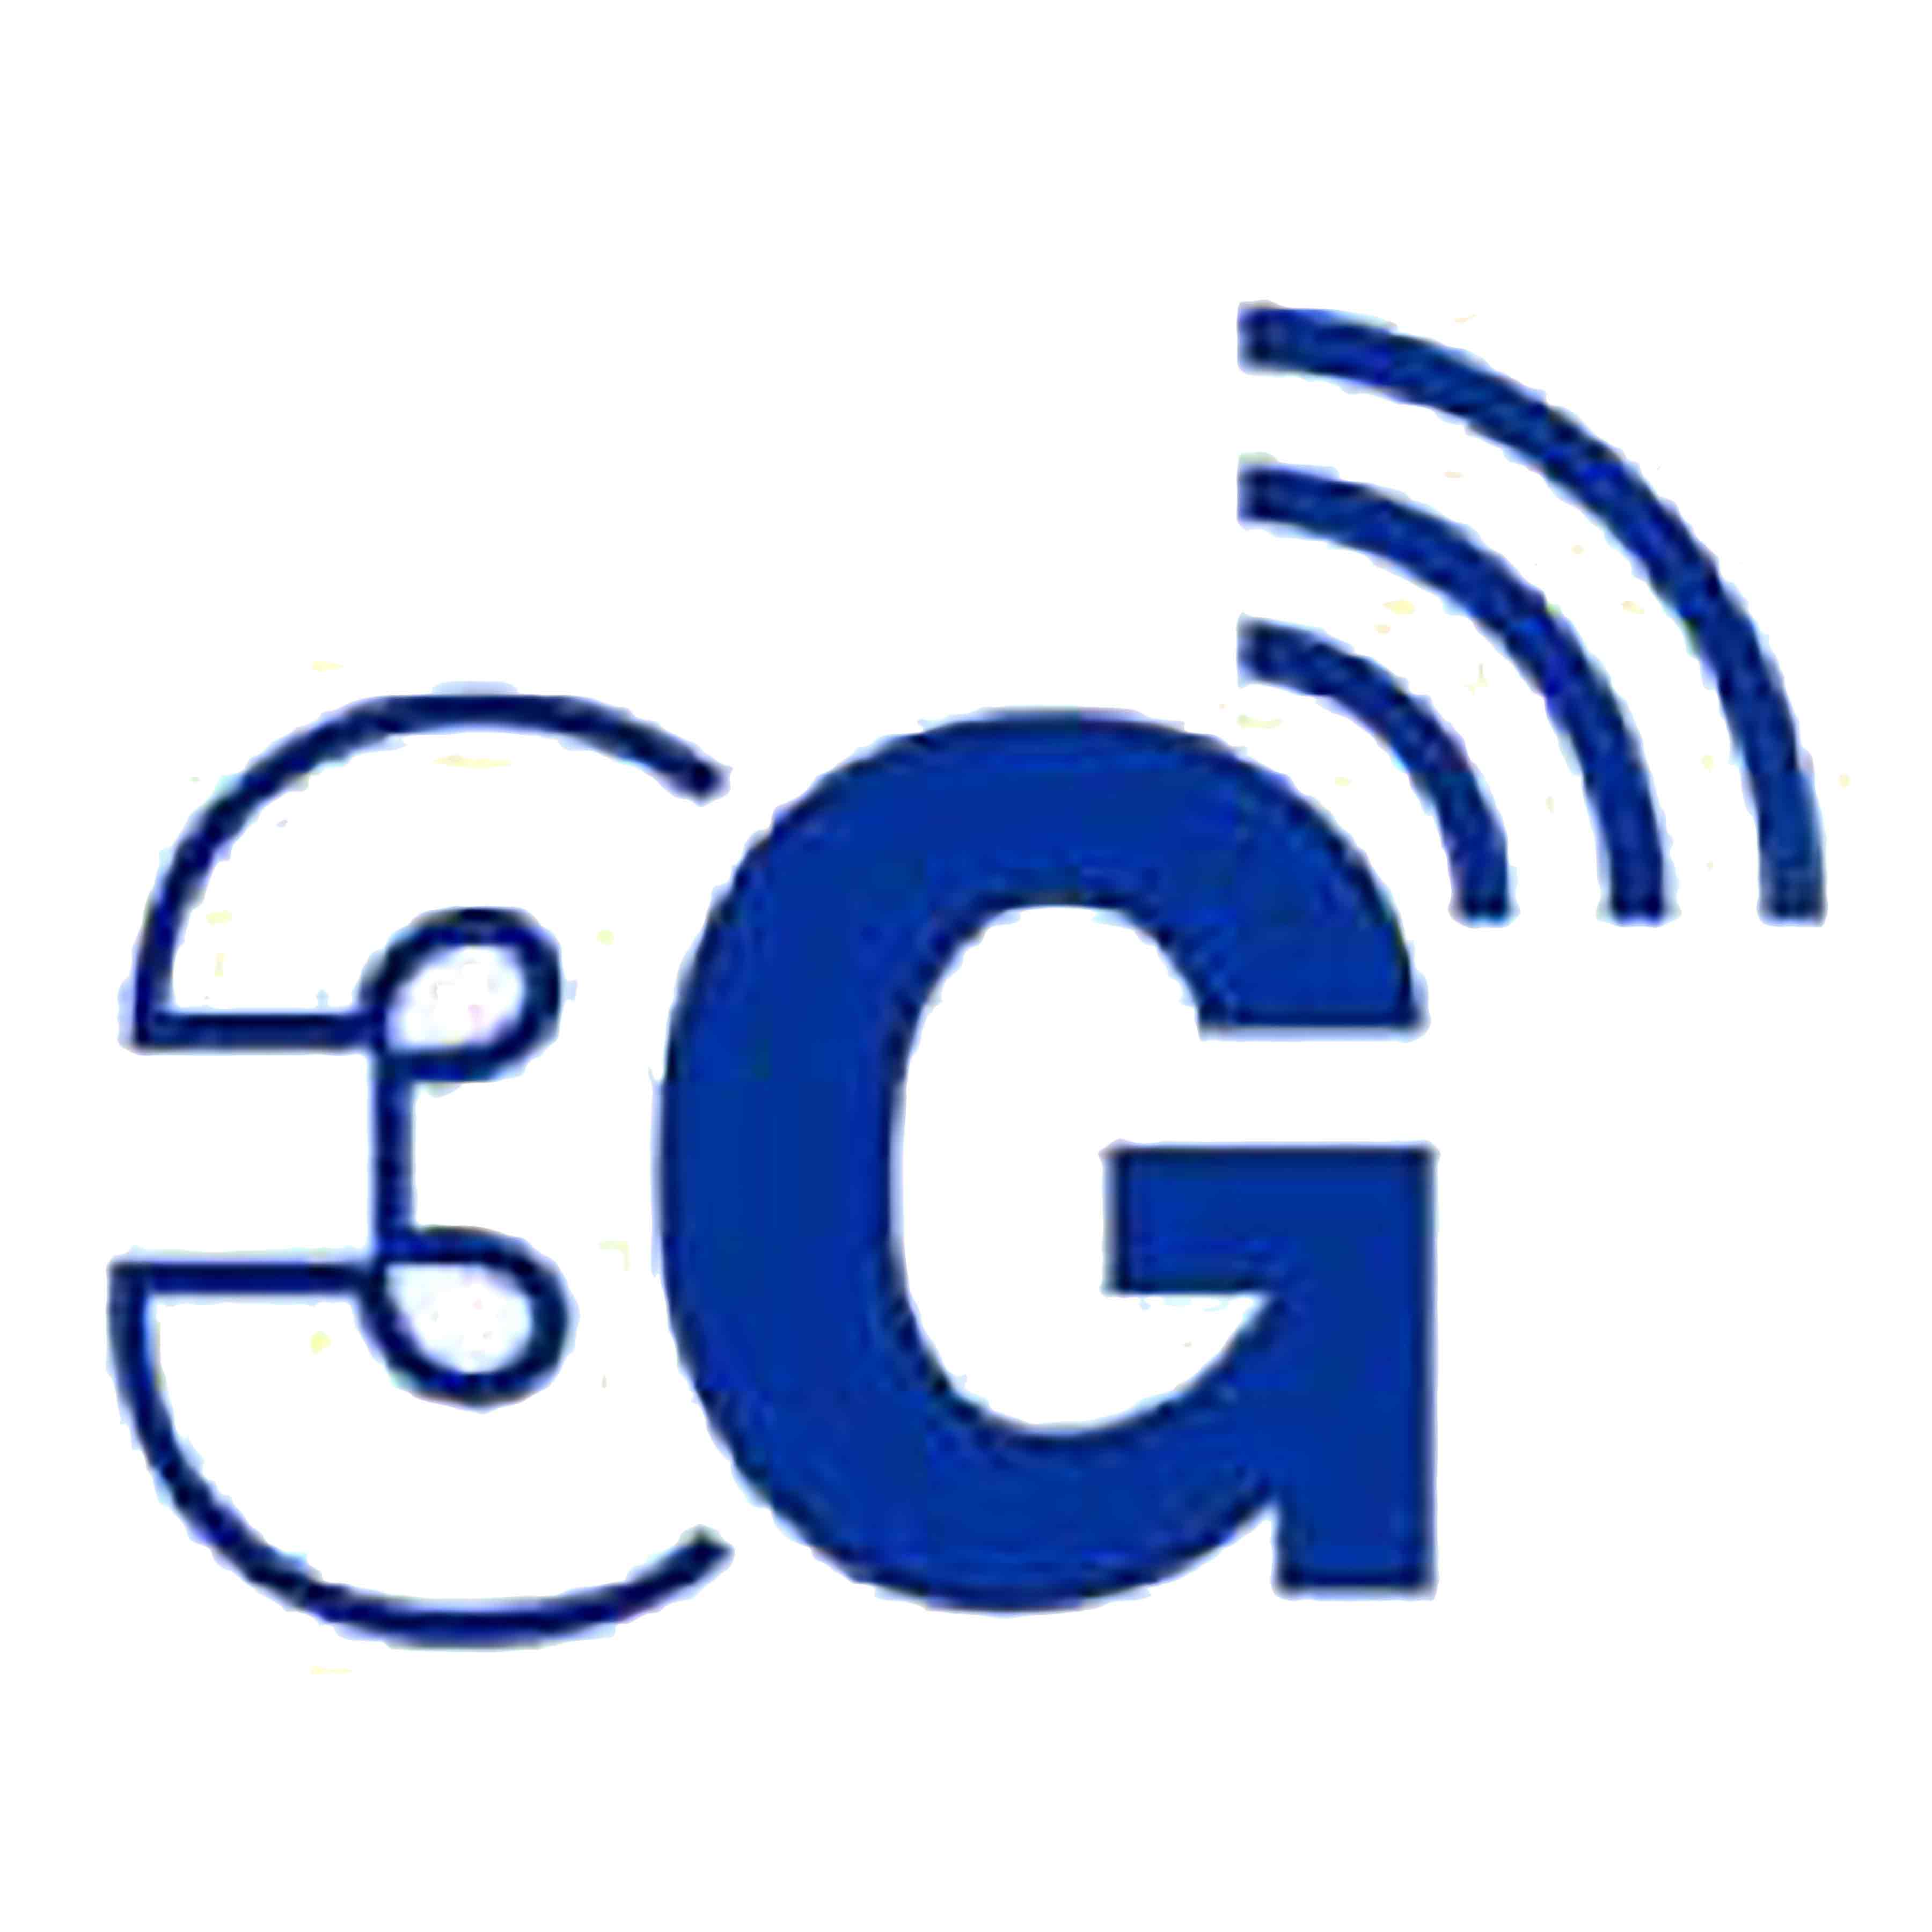 3g.com Logo photo - 1